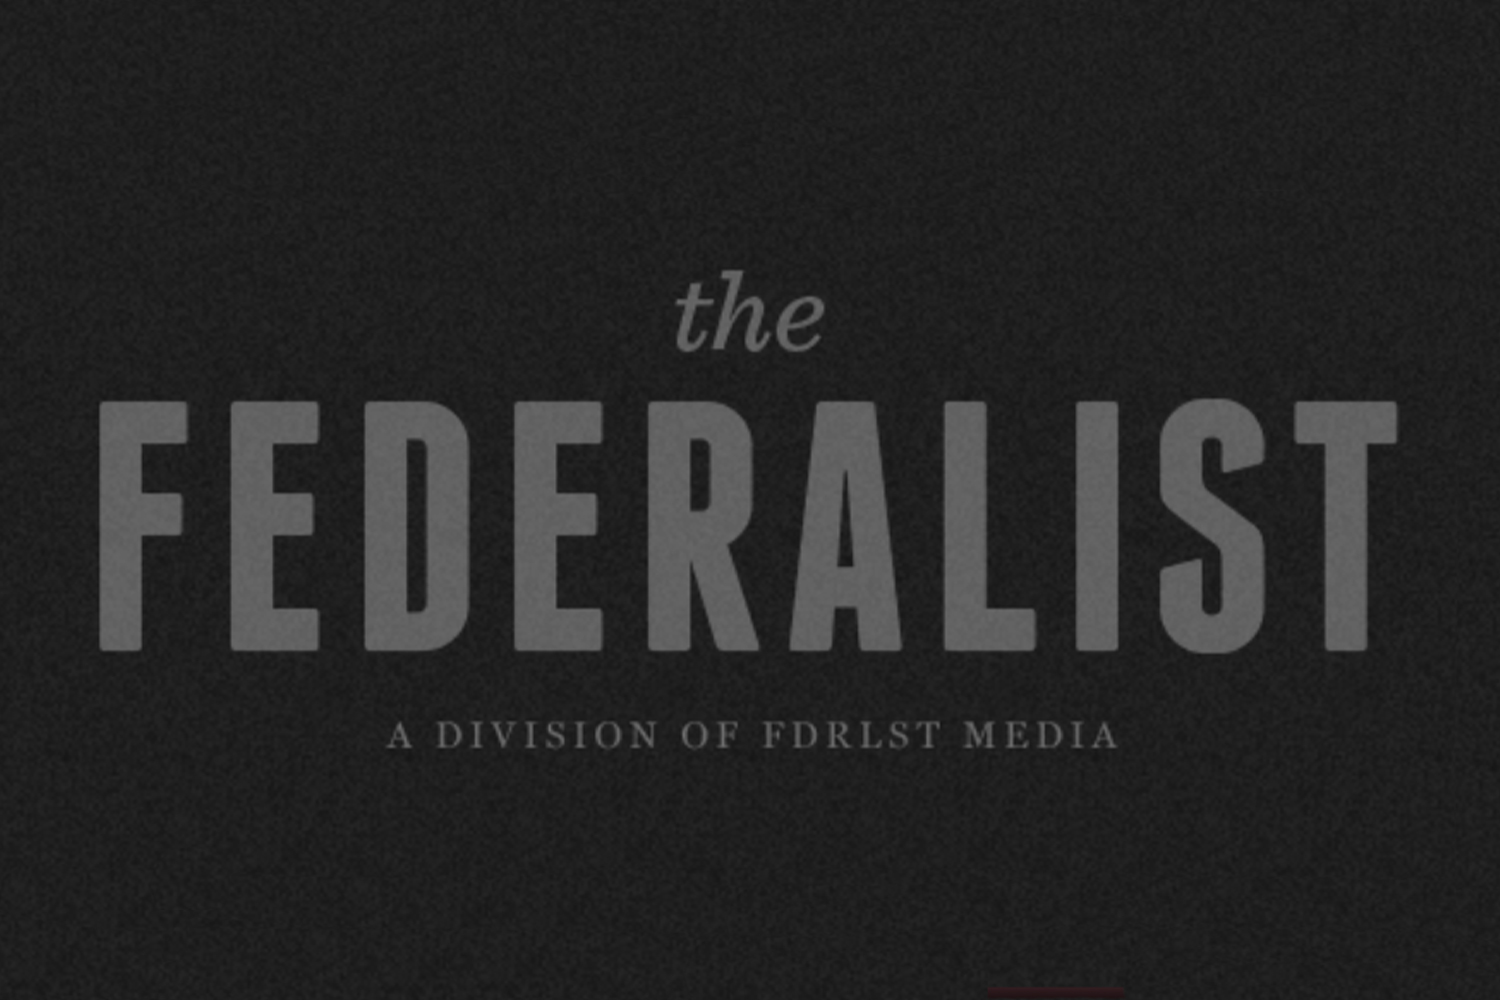 www.thefederalist.com